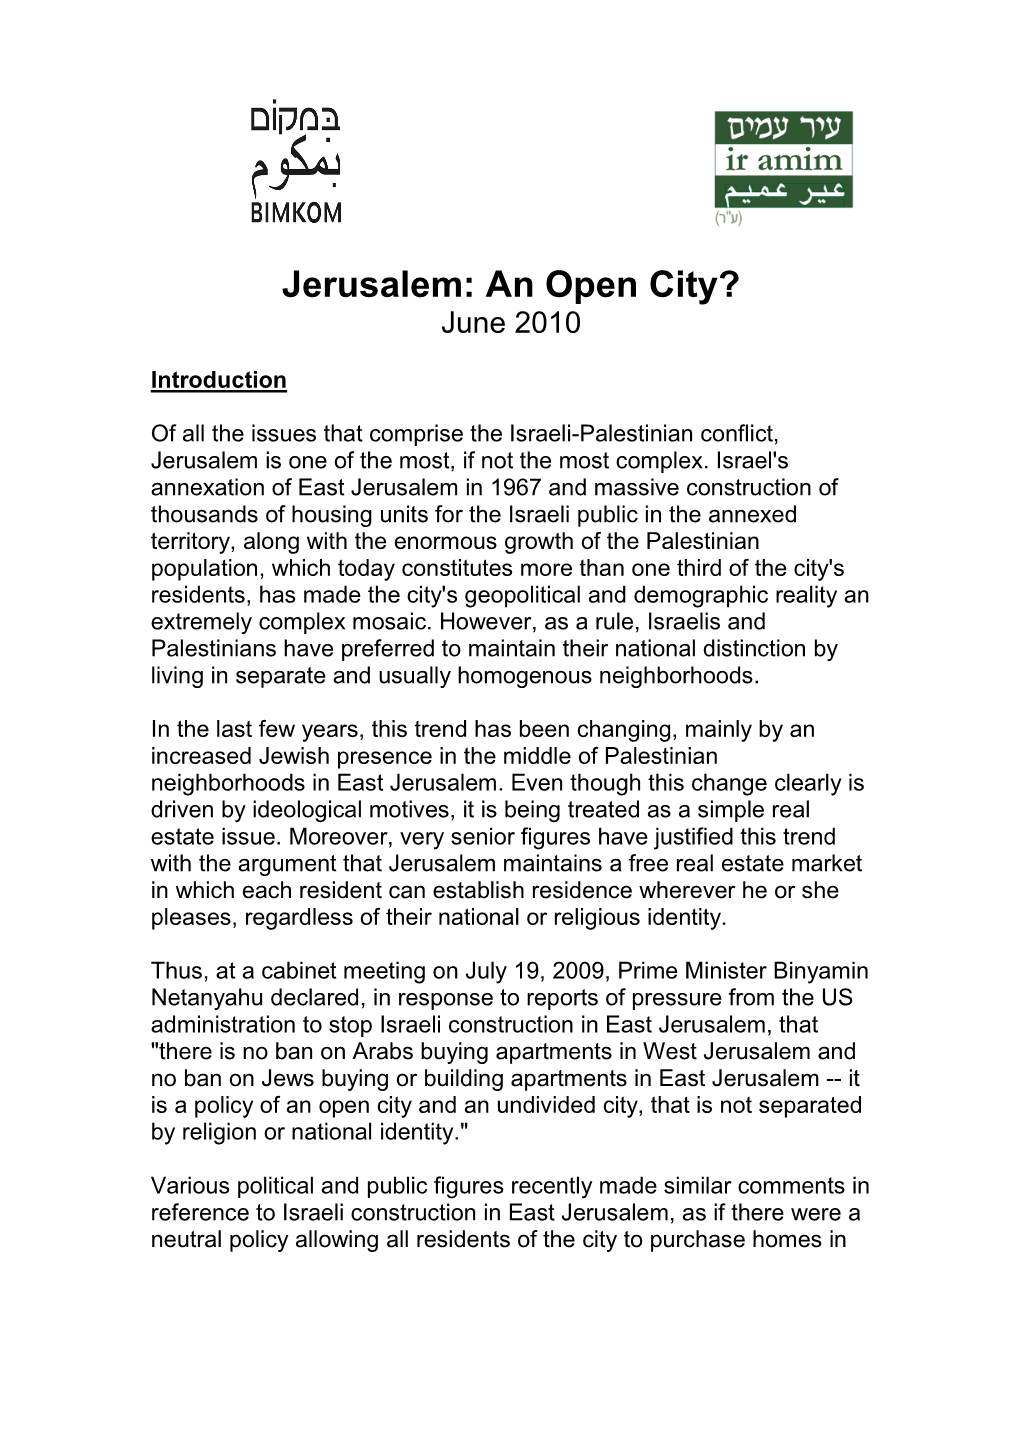 Jerusalem: an Open City? June 2010